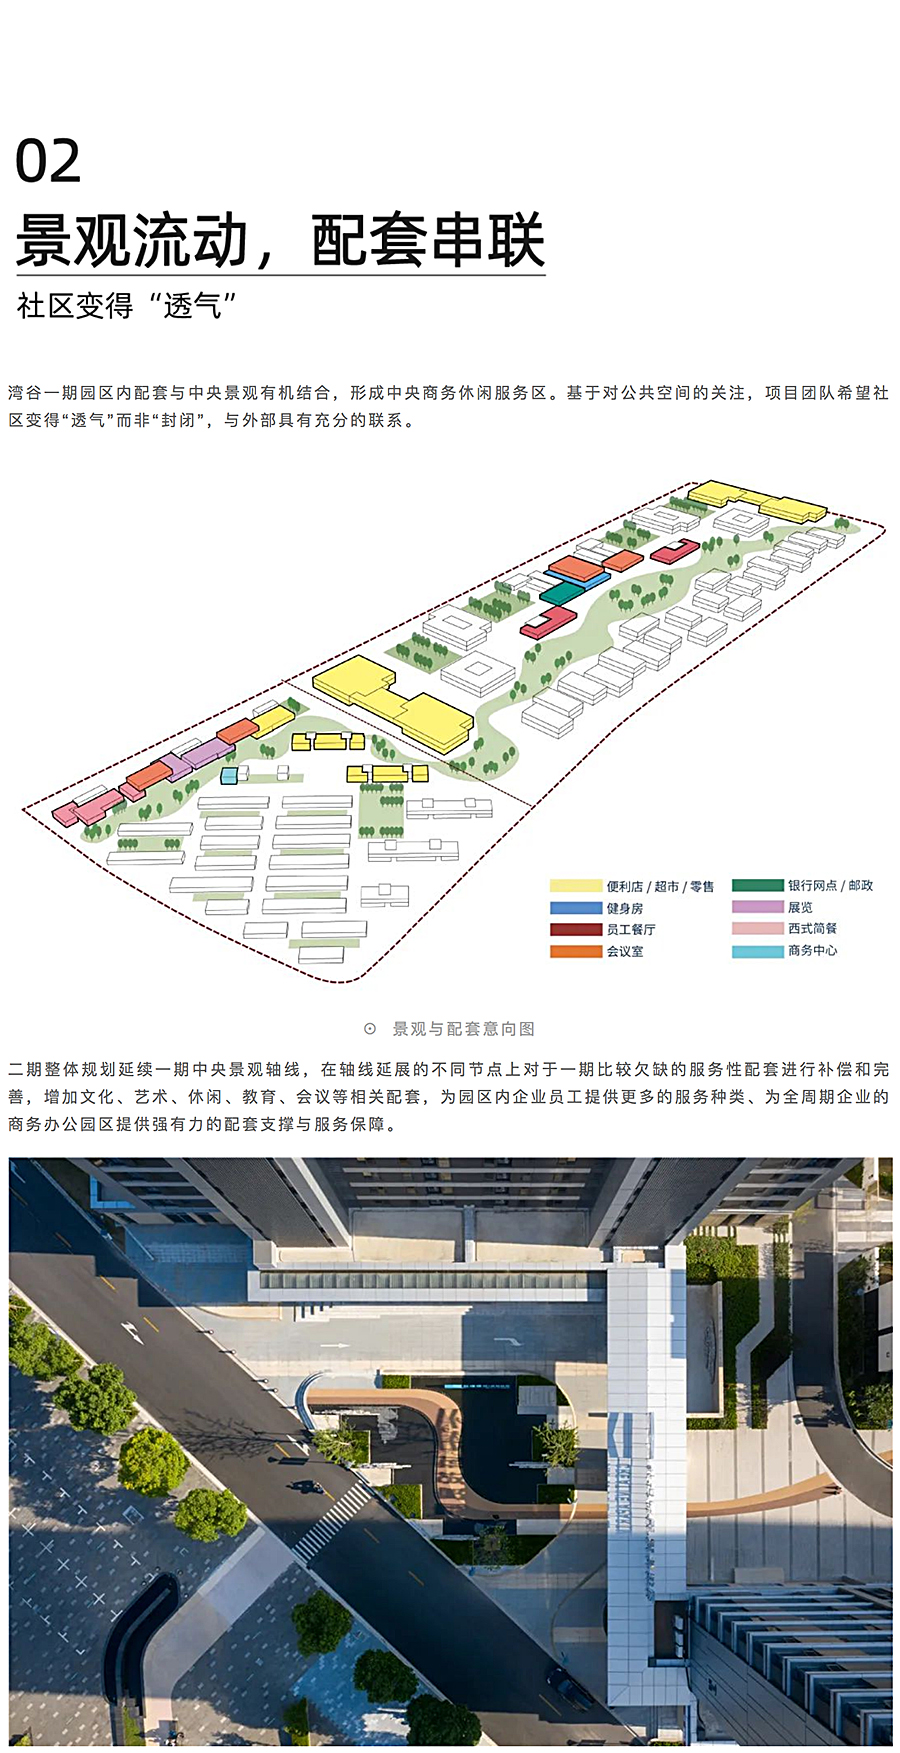 上海城投湾谷科技园二期_0002_图层-3.jpg